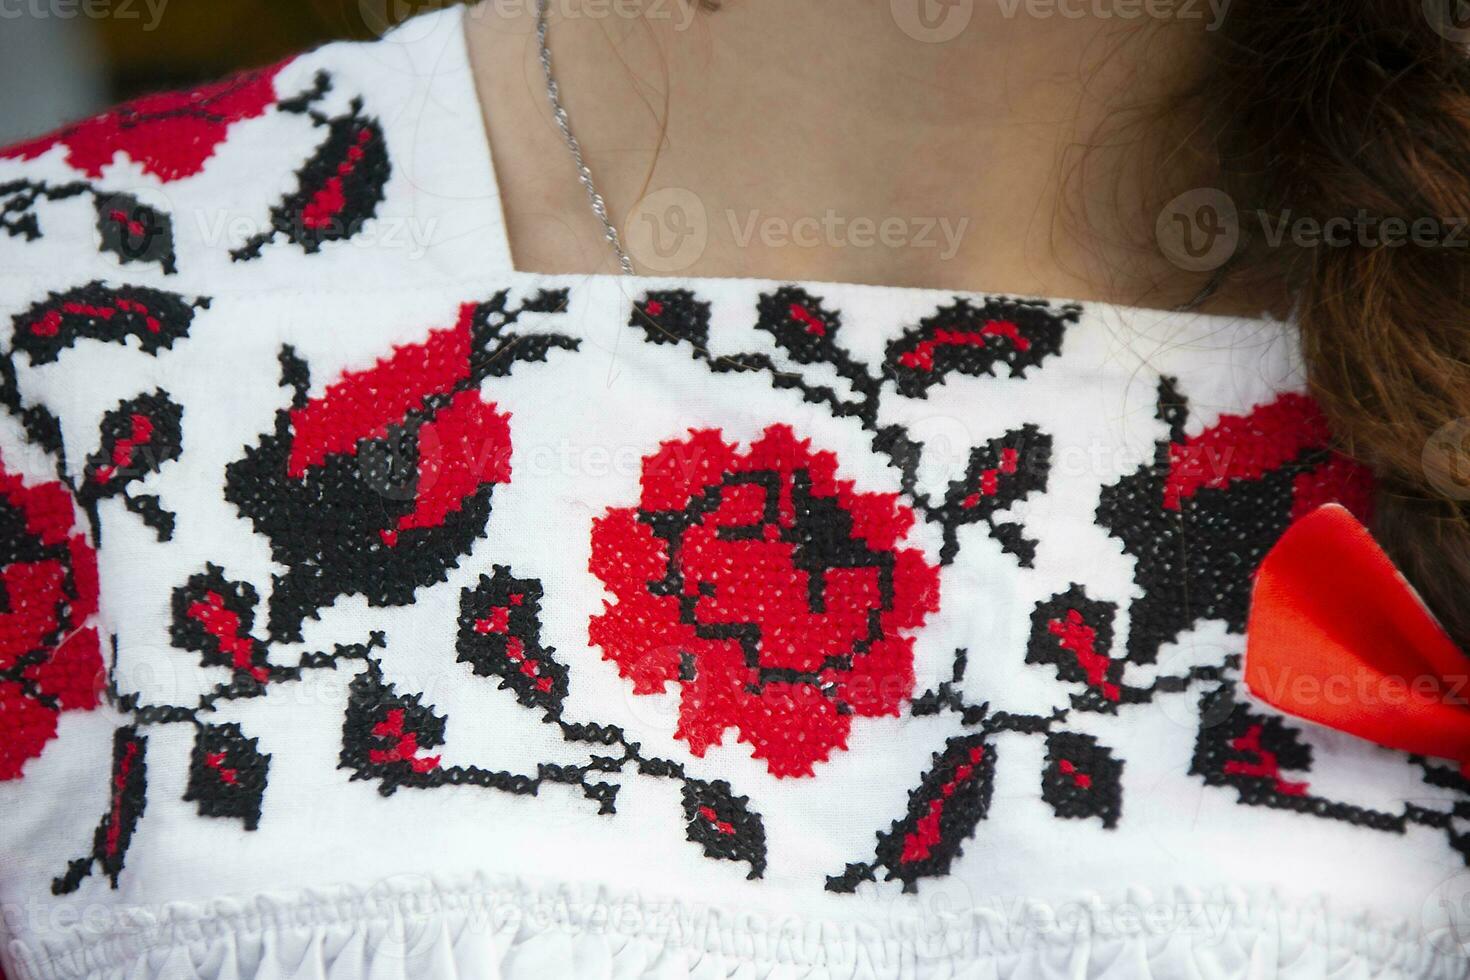 parte do a mulheres nacional eslavo vestir com bordado flores foto